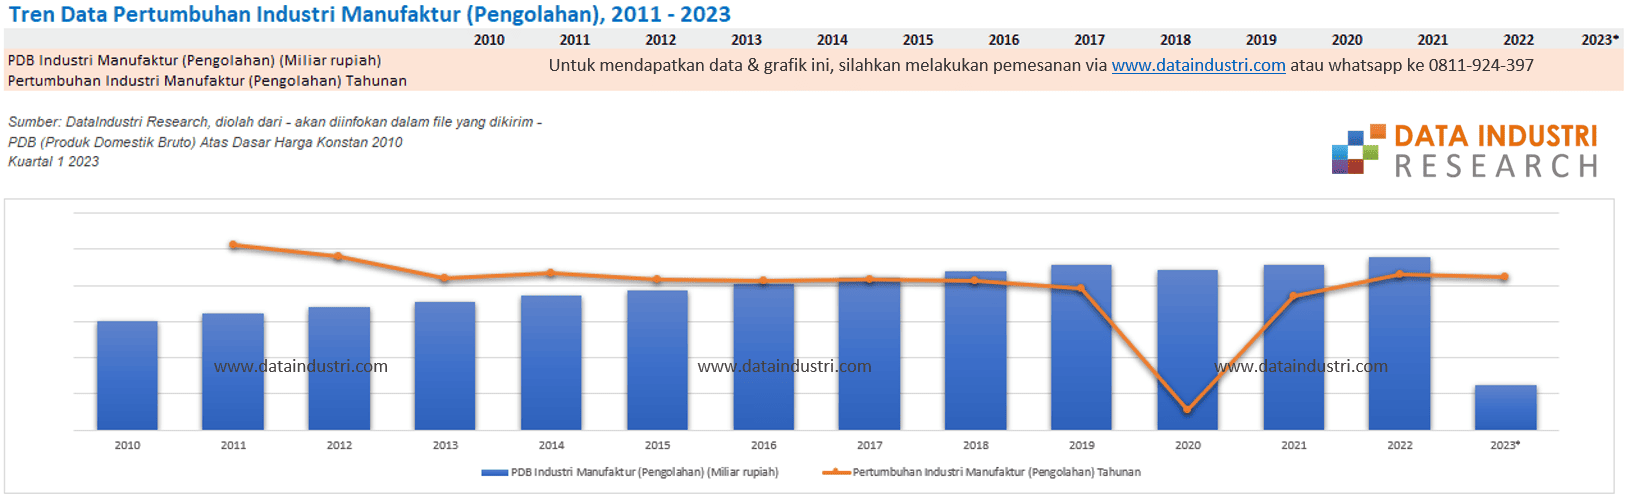 Tren Data Pertumbuhan Industri Manufaktur (Pengolahan), 2011 - 2023